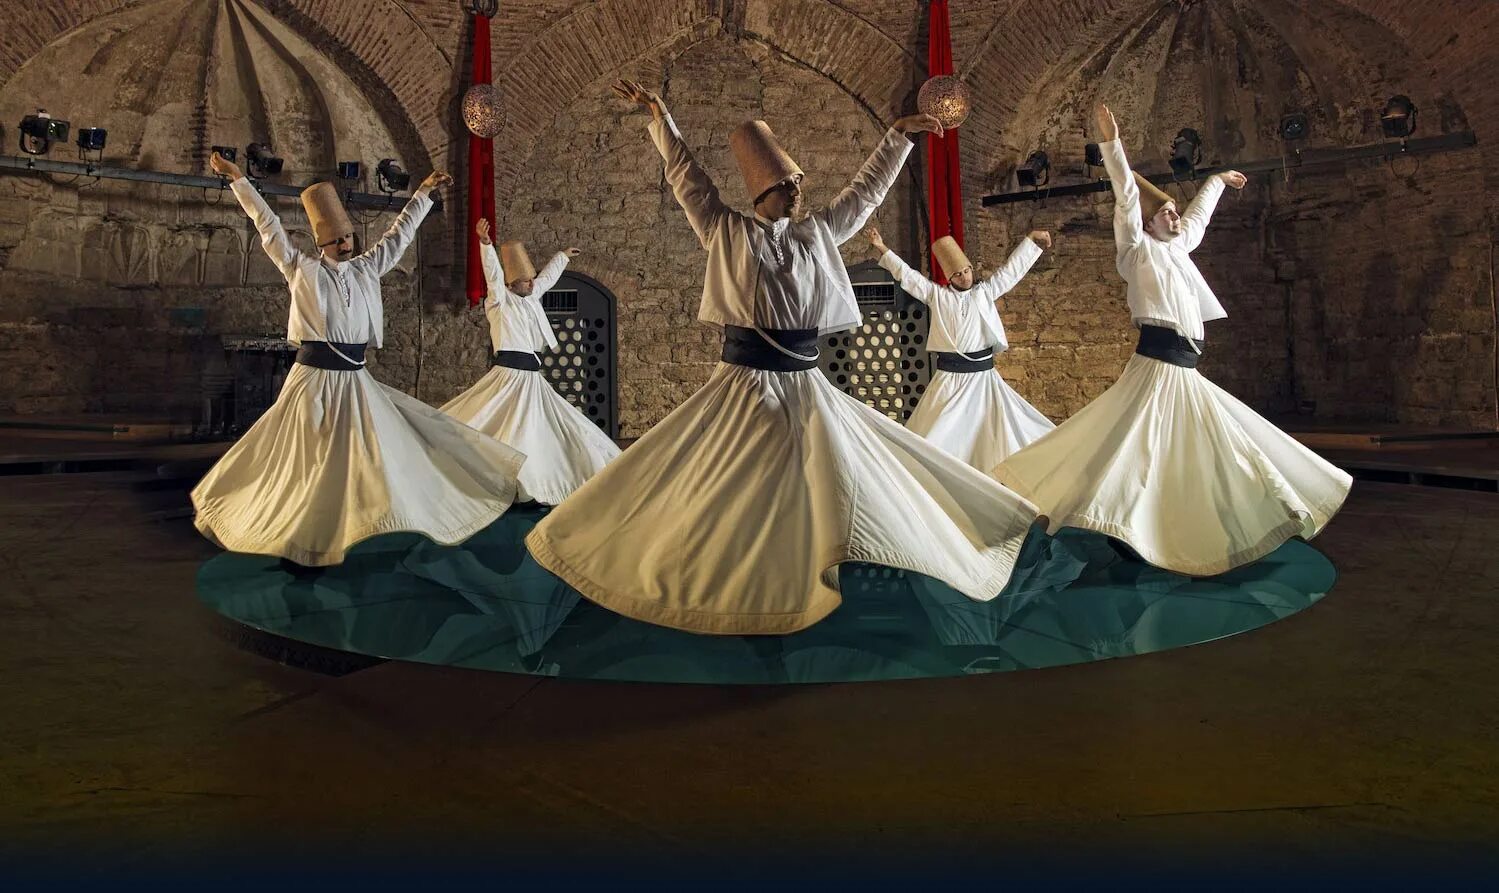 Турция танец дервишей. Шеб-и-аруз (фестиваль вращающихся дервишей в Конье). Танец дервишей в Стамбуле. Танец суфиев дервишей. Культурные центры турции